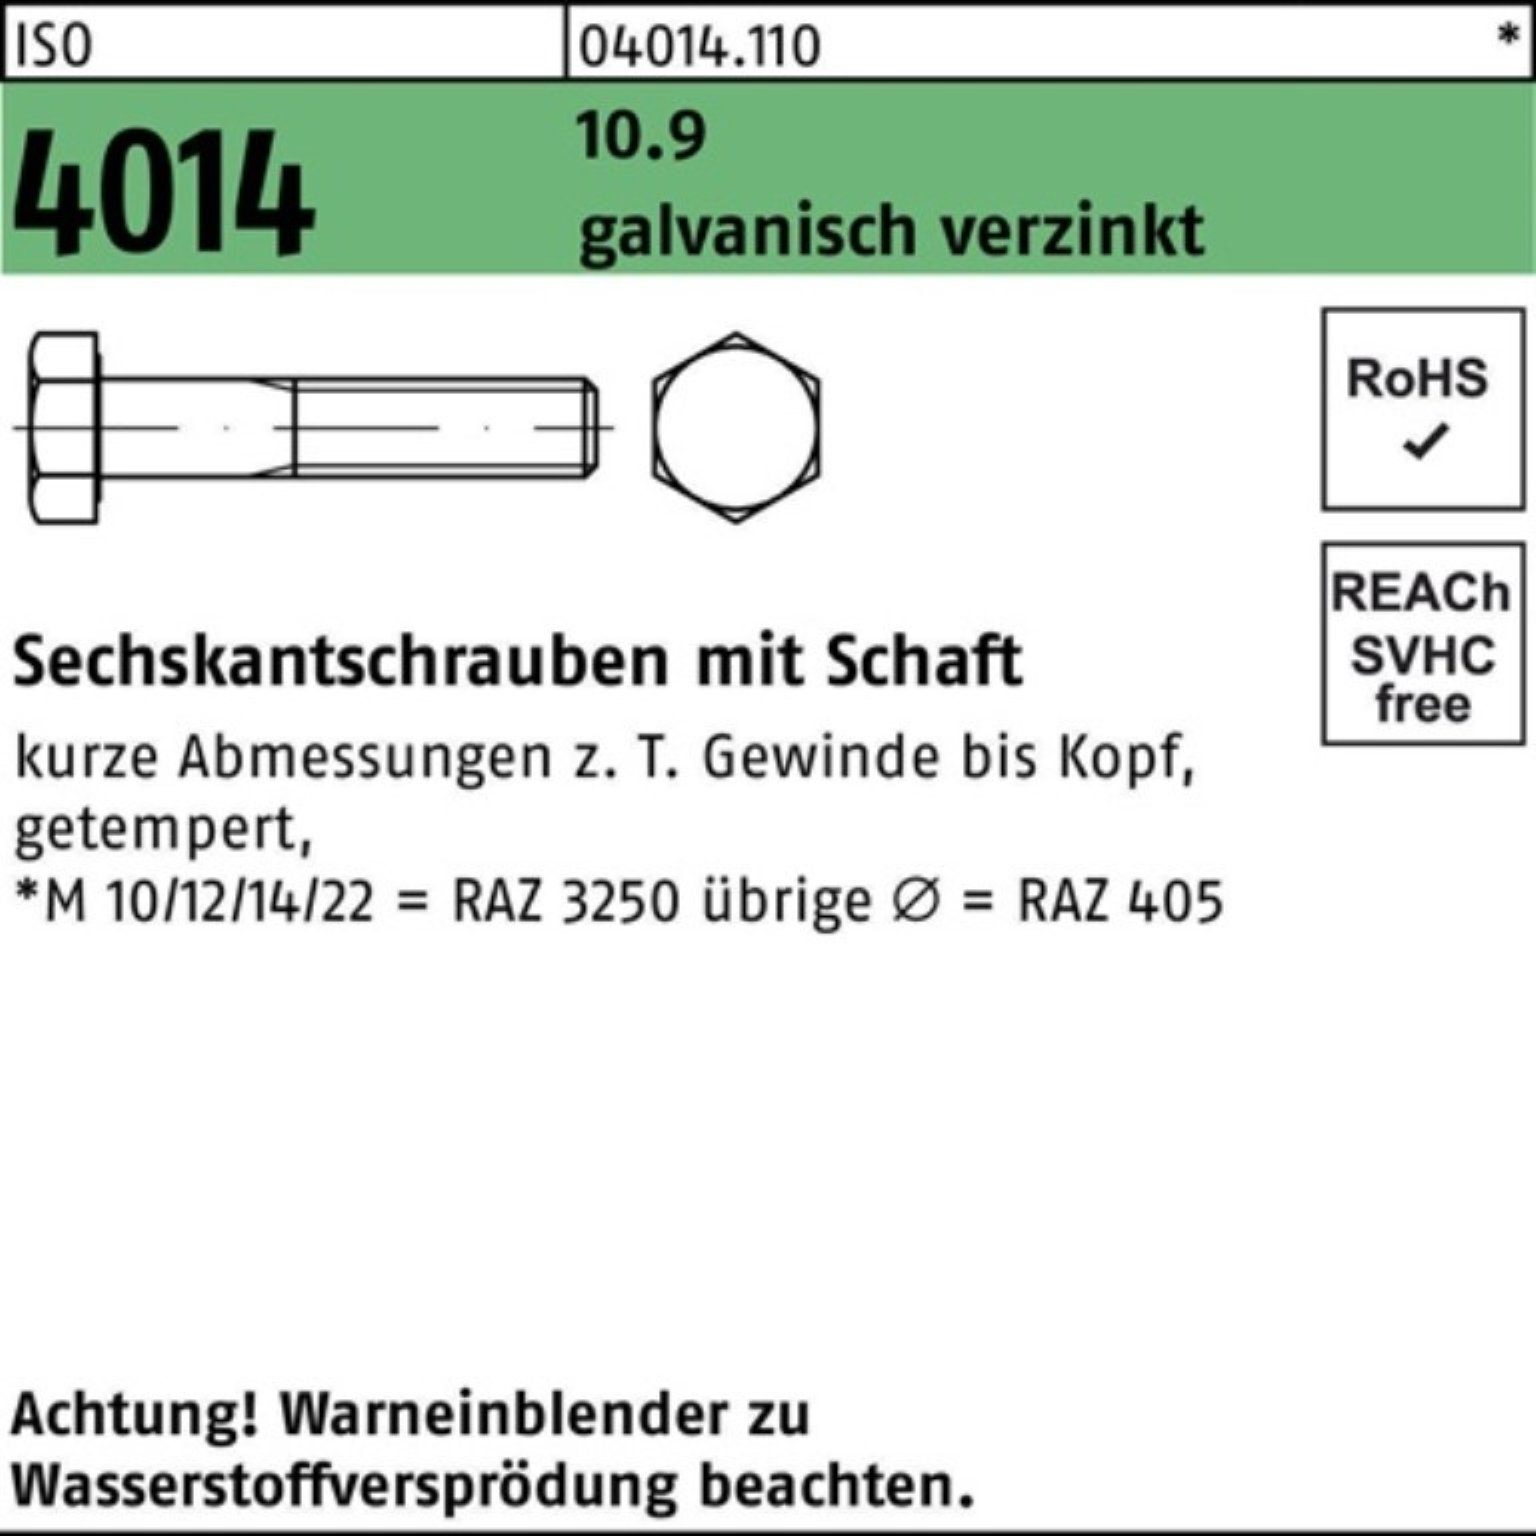 Bufab Sechskantschraube 200er M8x Sechskantschraube 55 galv.verz. 4014 10.9 20 Pack Schaft ISO